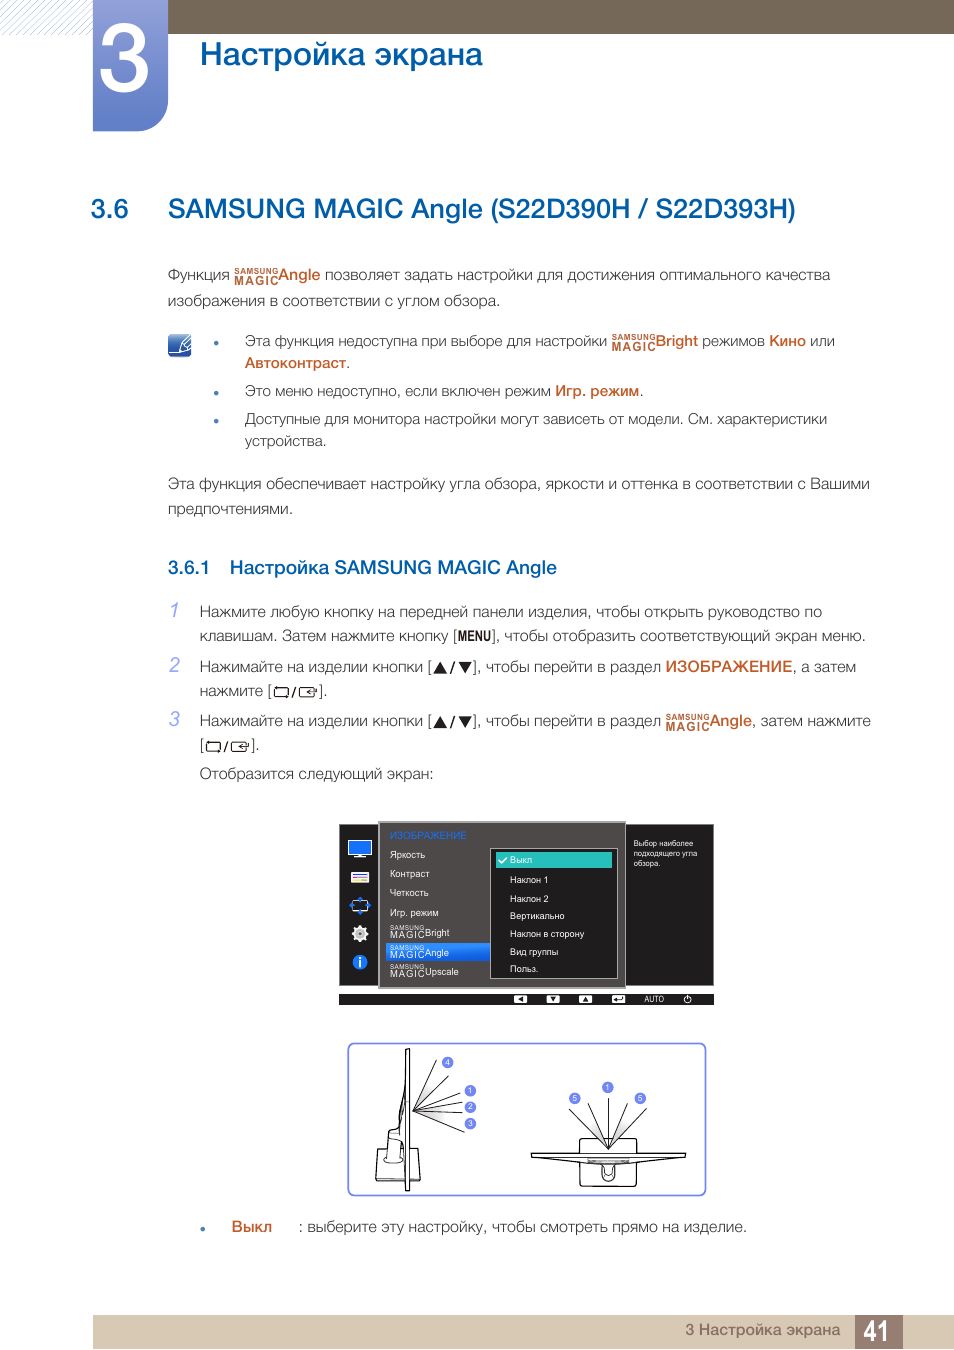 Настройки самсунг с 23. Samsung-s22 инструкция. Samsung s22 меню. Samsung Magic Angle что это. Монитор Samsung s22d390h характеристики.